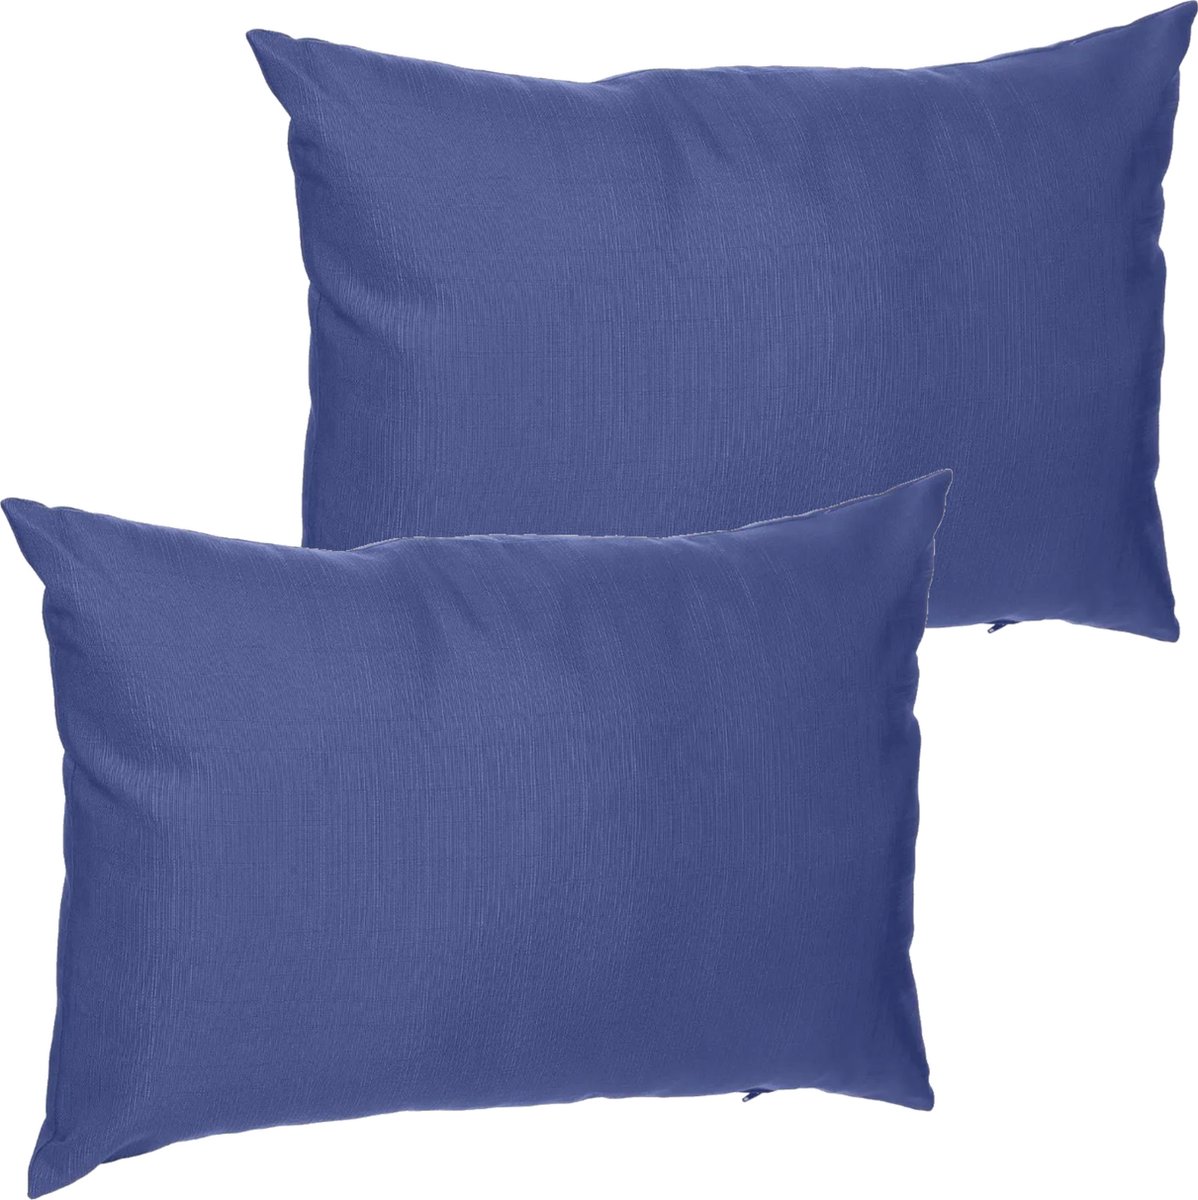 Set van 4x stuks bank/sier/tuin kussens voor binnen en buiten lavendel paars 30 x 50 x 10 cm - Water en UV bestendig